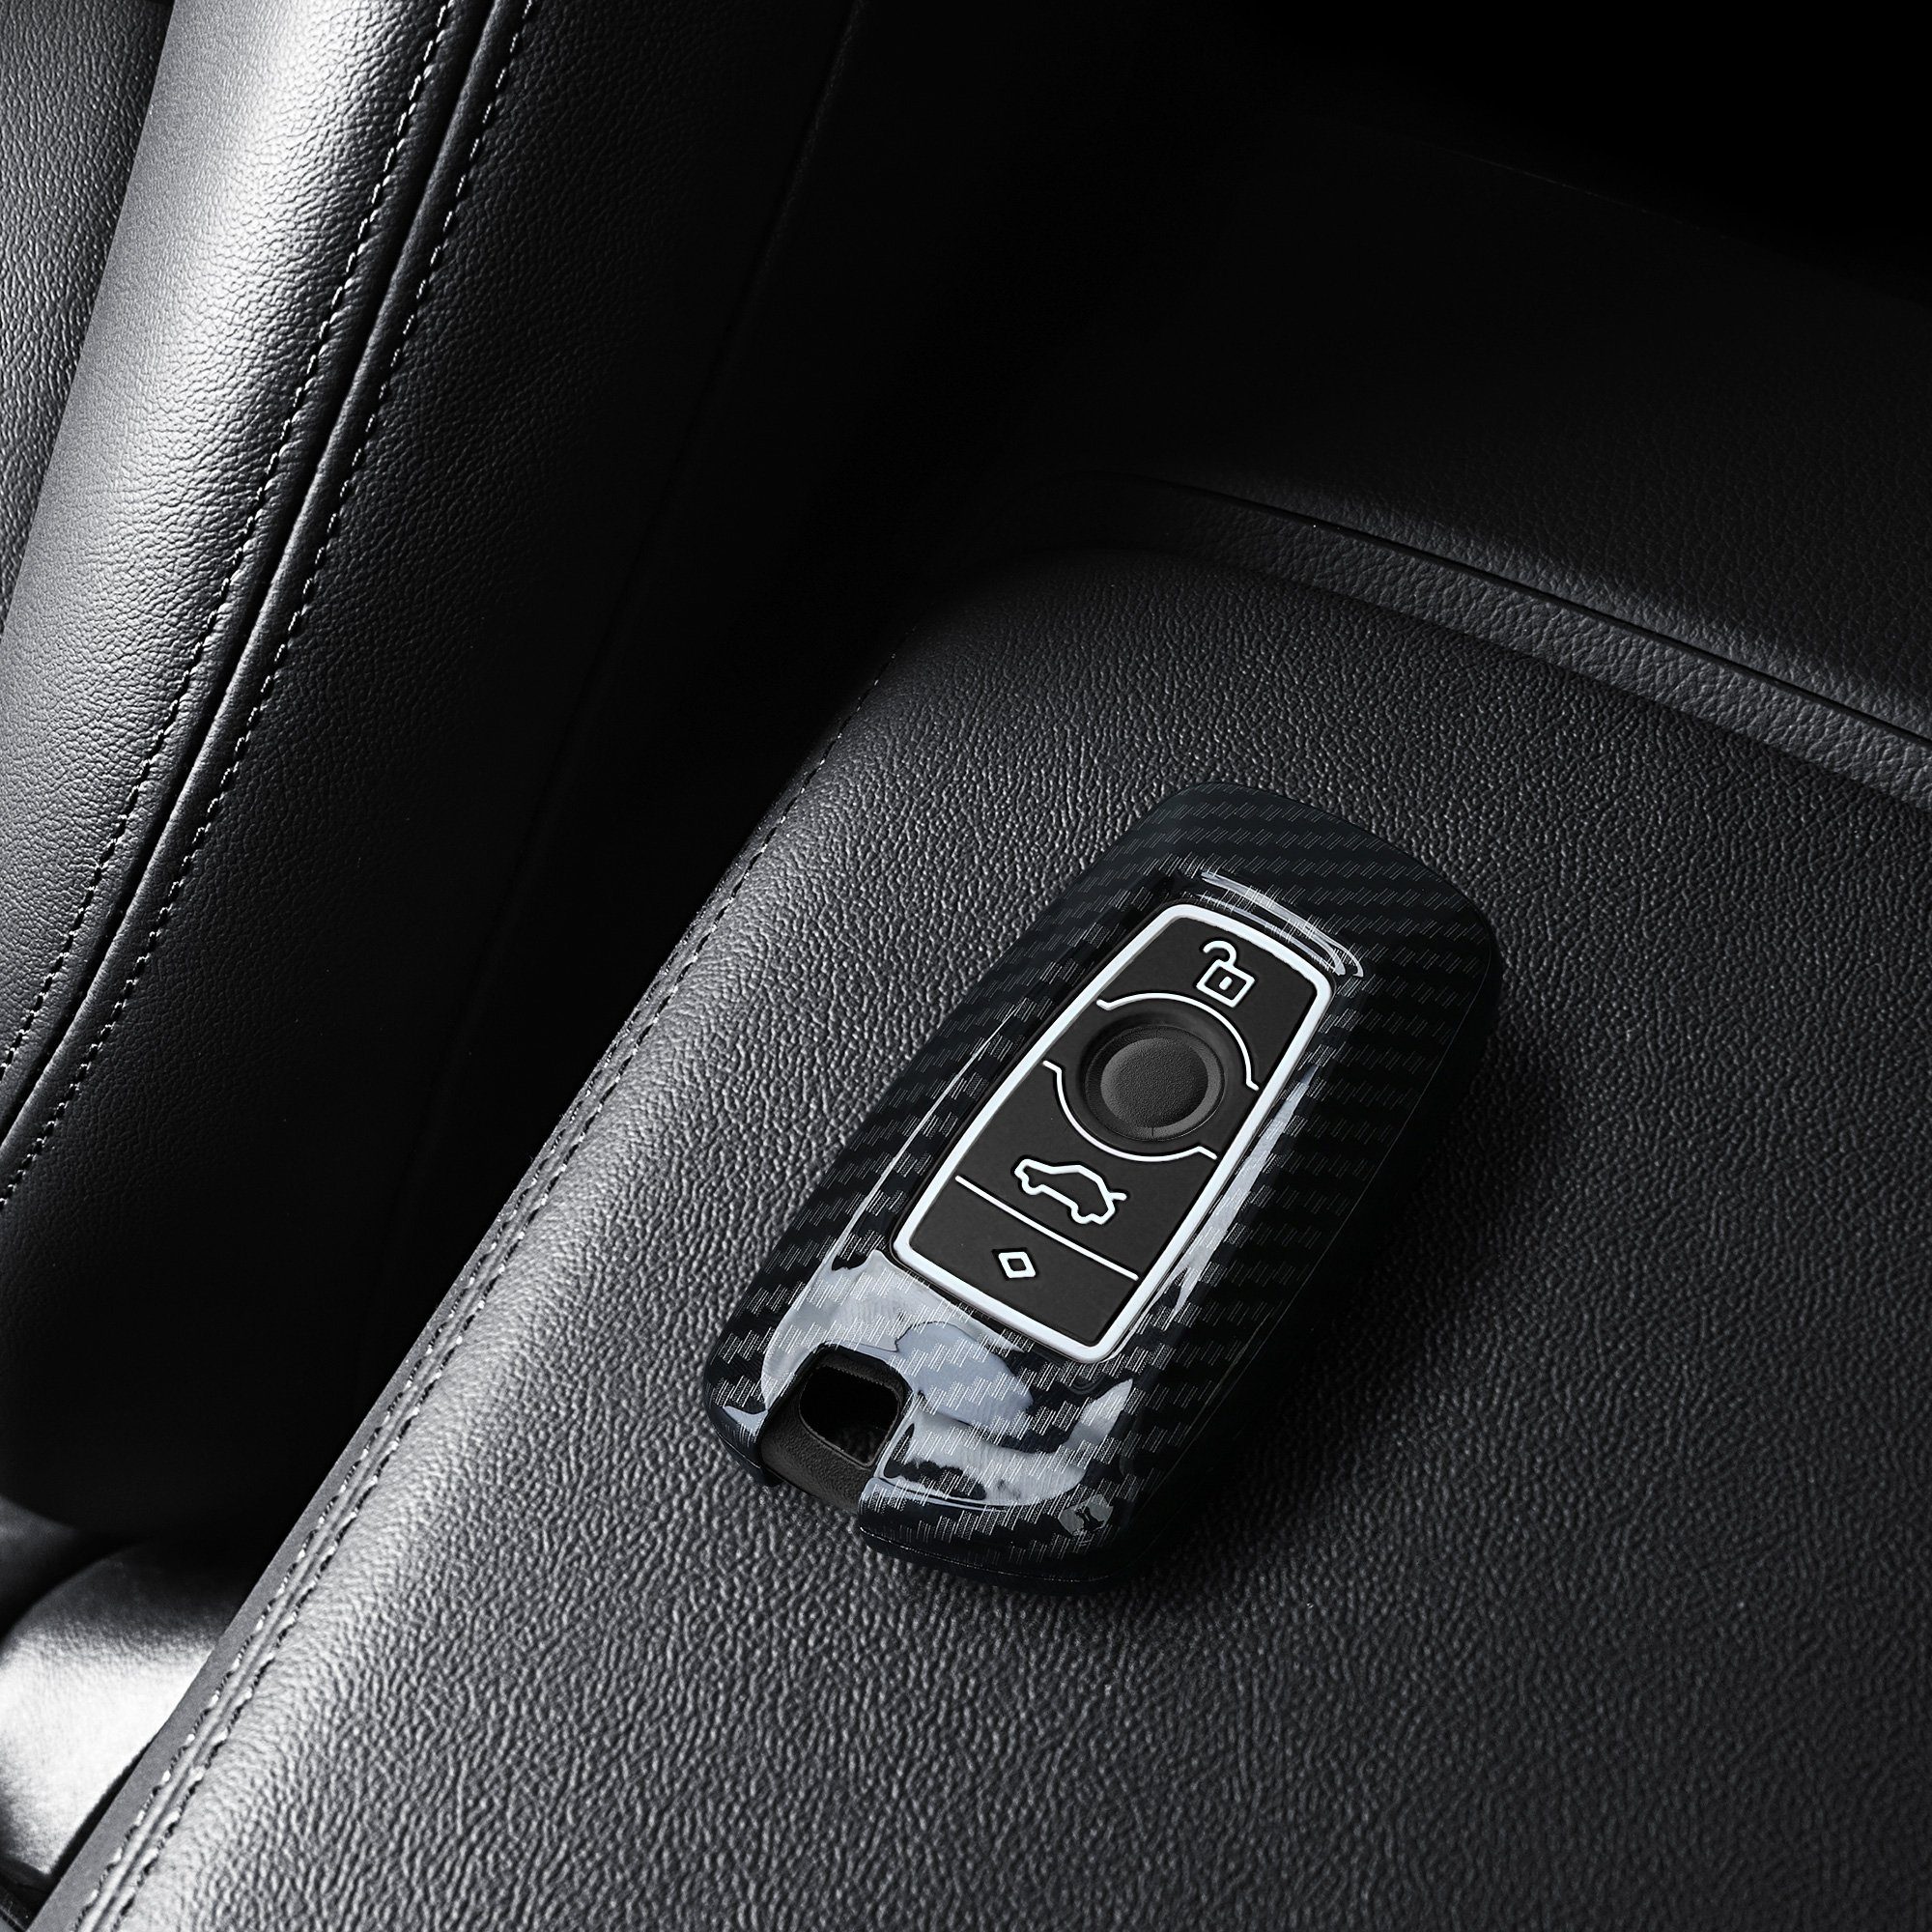 Hardcover Schlüsselhülle für - BMW, Autoschlüssel Schutzhülle Schwarz Case Schlüsseltasche Hülle kwmobile Cover